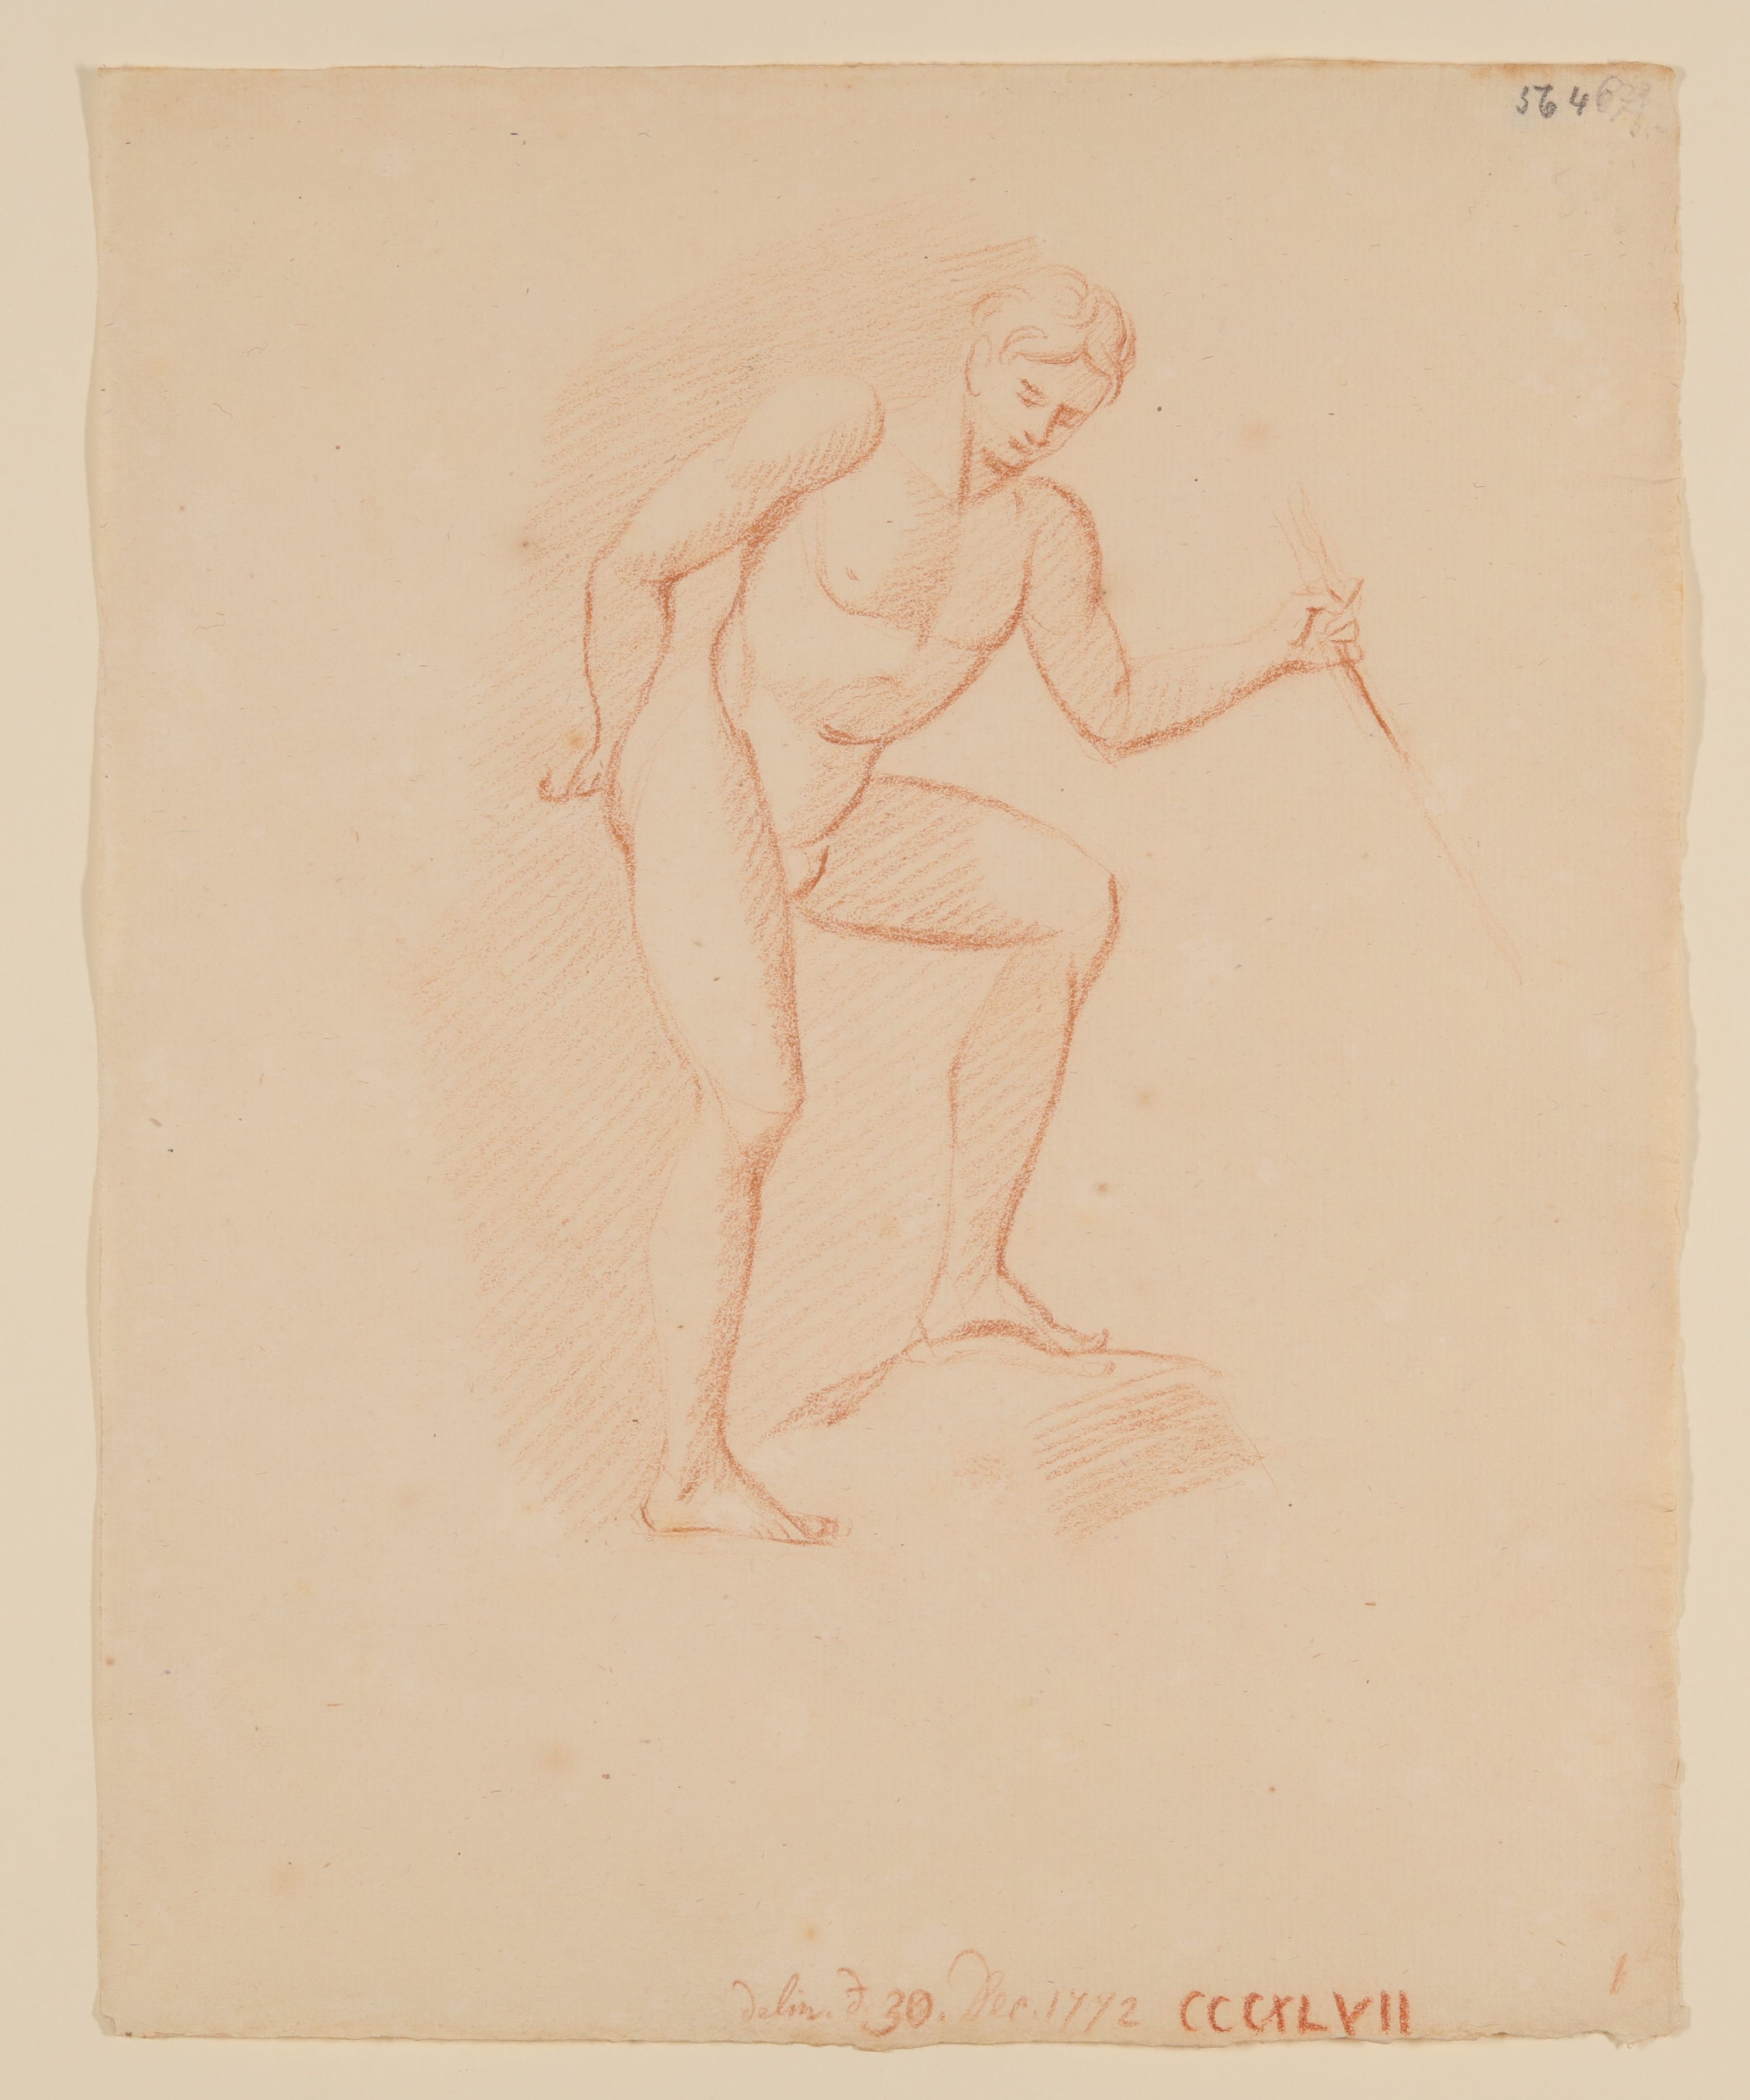 Männlicher Akt, mit der linken Hand einen Stock haltend (Freies Deutsches Hochstift CC BY-NC-SA)